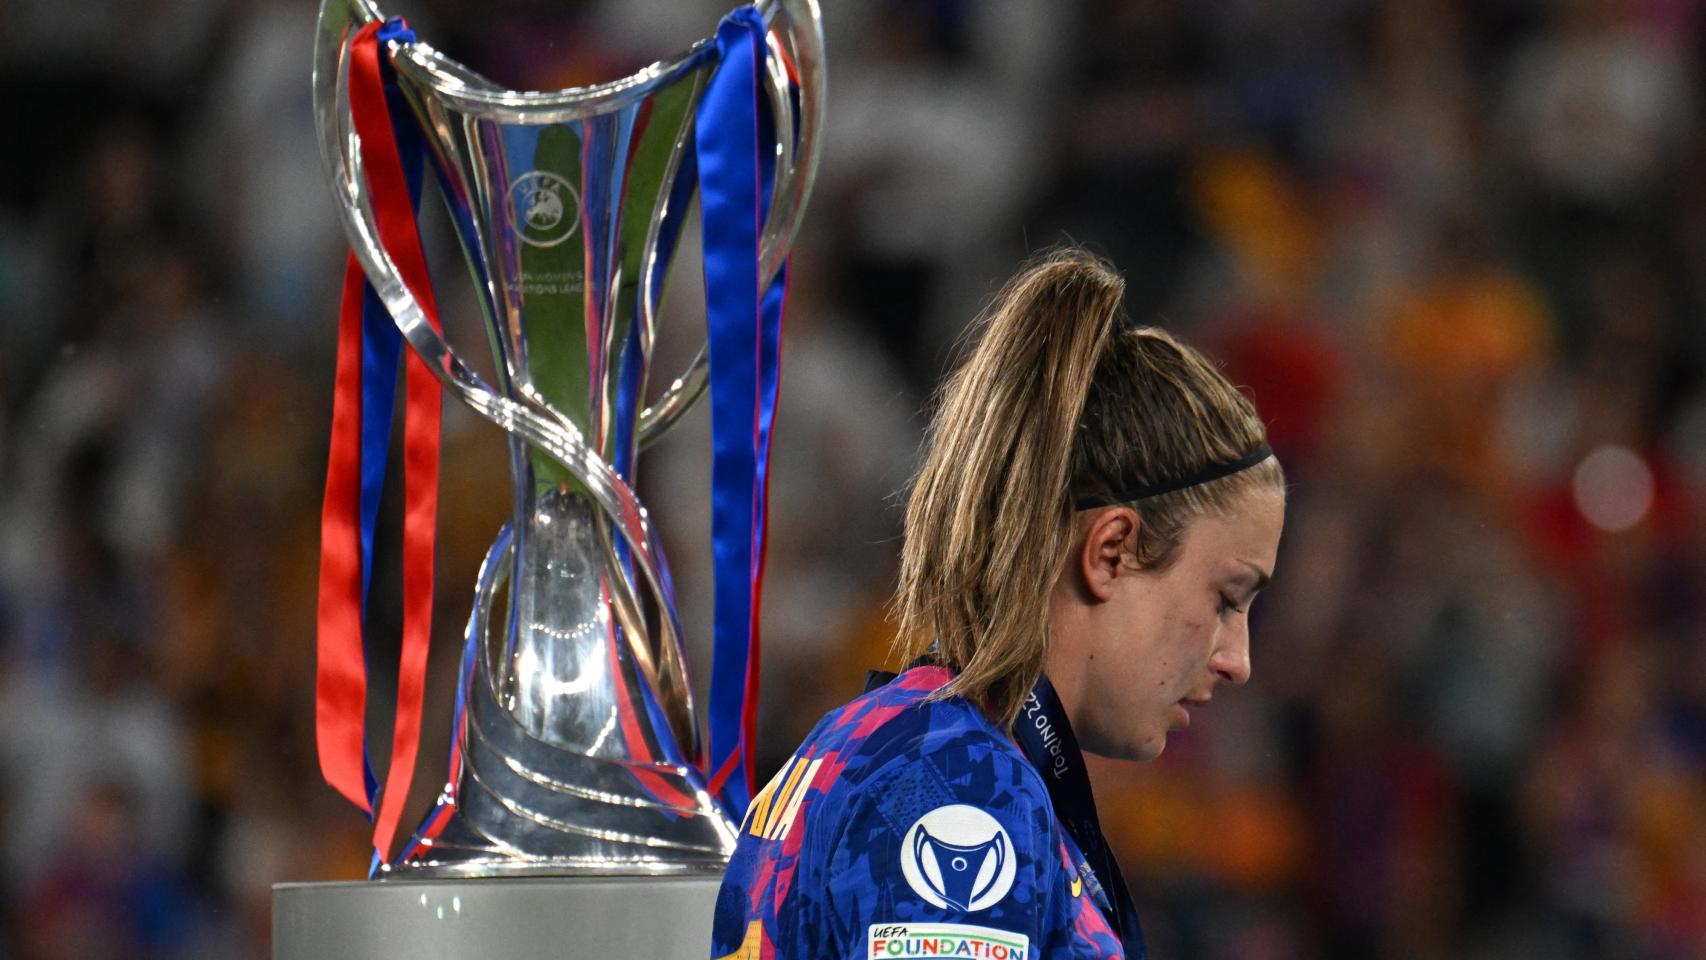 Alexia Putellas y su emoción tras ganar la UEFA Women's Champions League  con el FC Barcelona: Cada día de sufrimiento que he pasado vale la pena